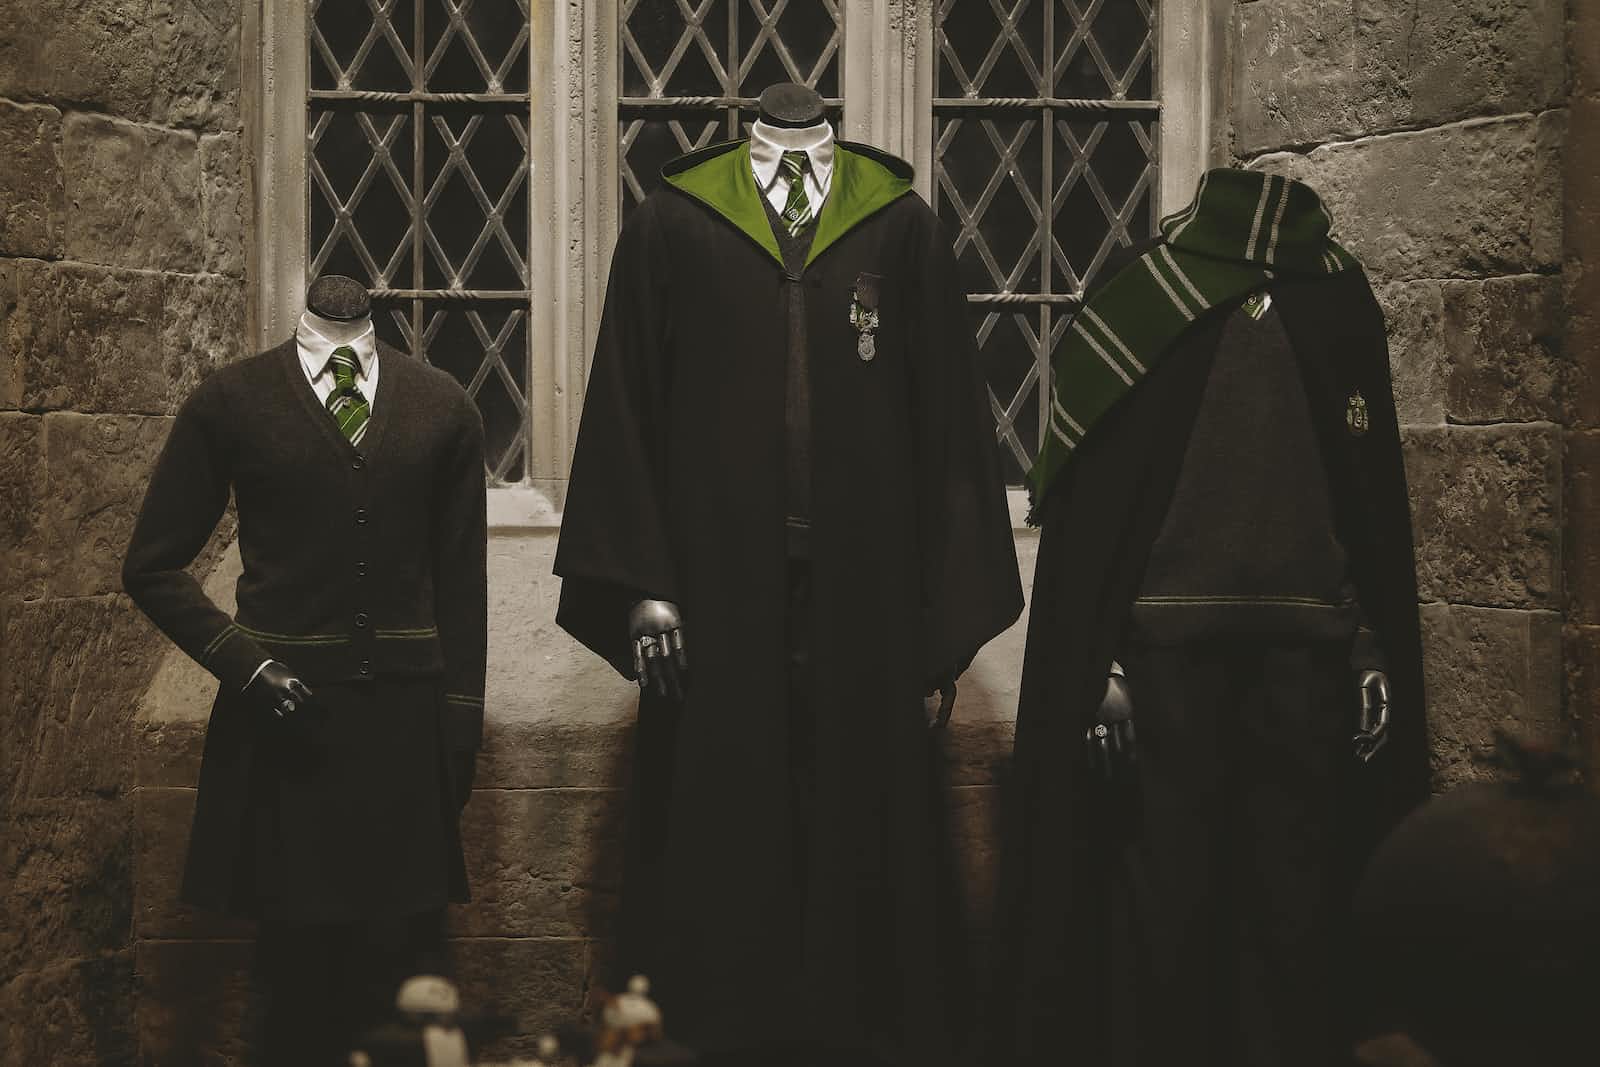 Harry Potter uniforms